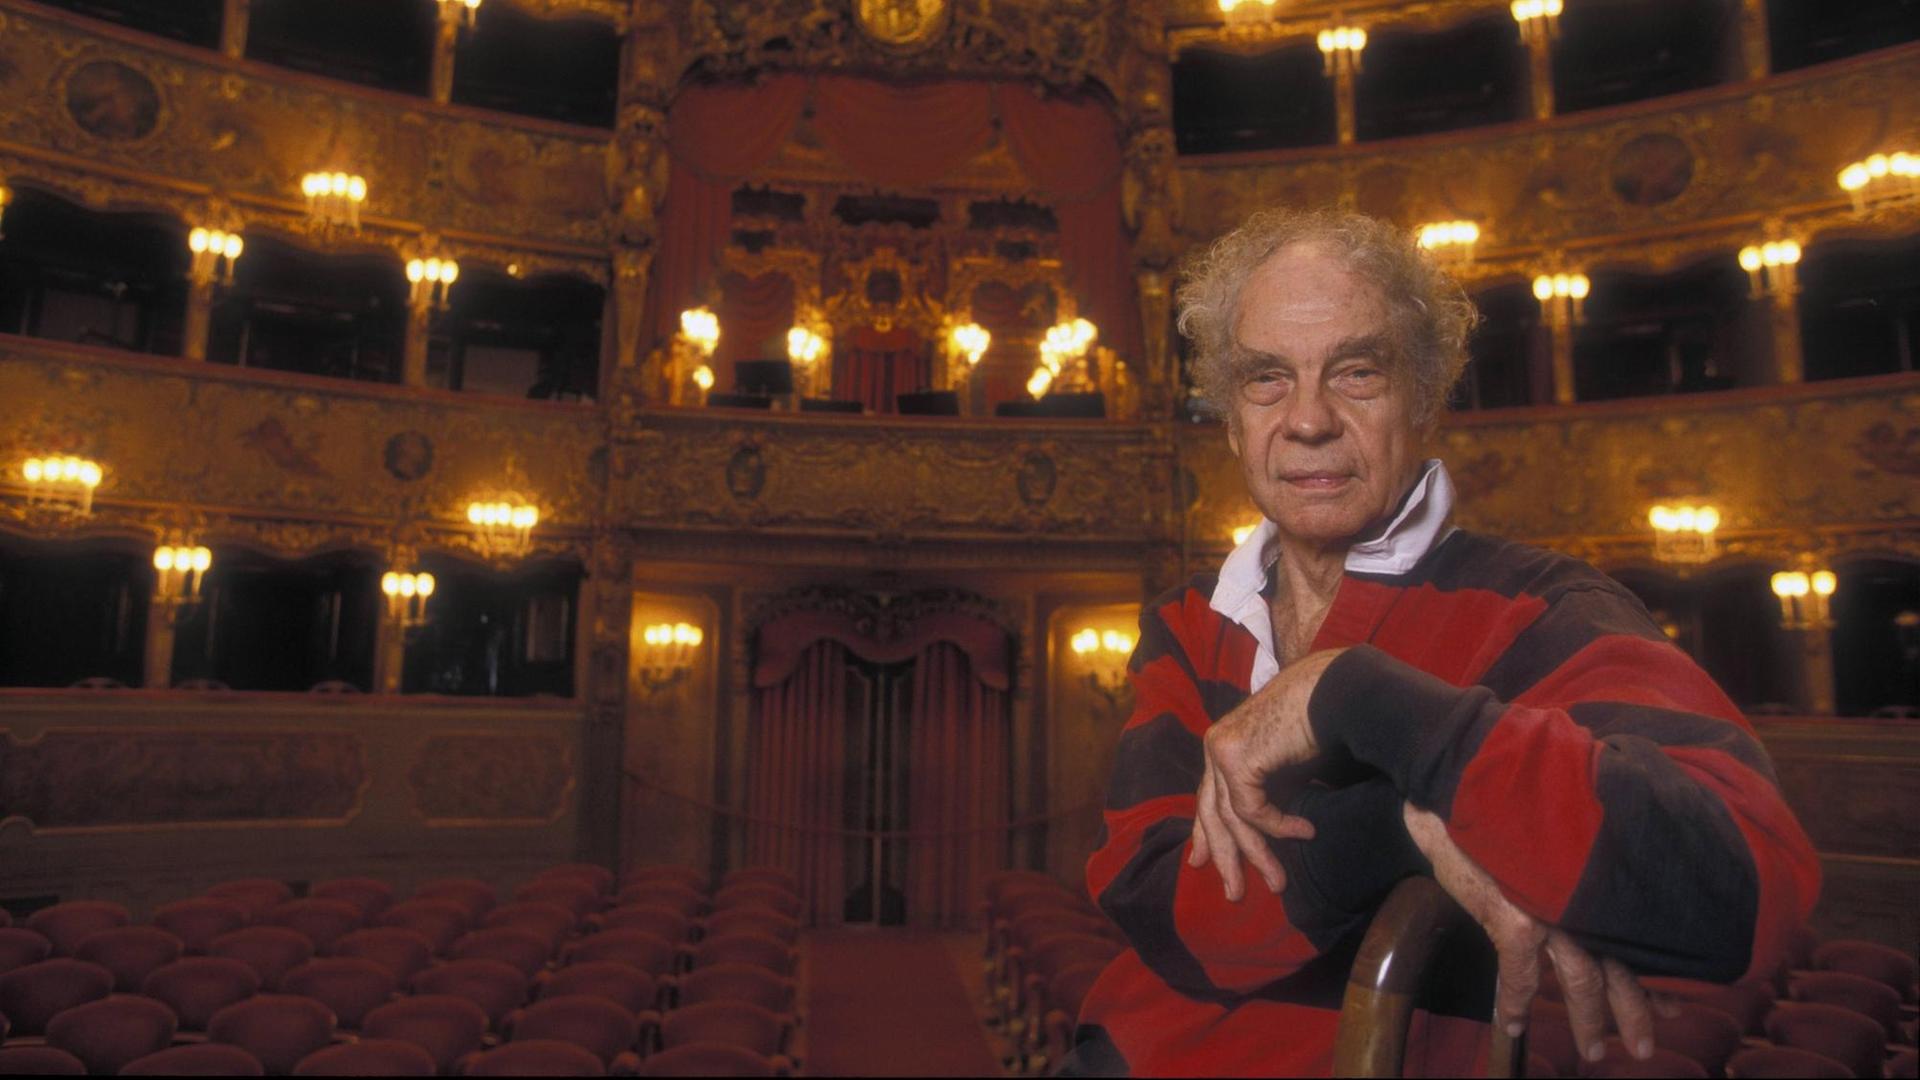 Der Choreograf Merce Cunningham sitzt im La Fenice Theater in Venedig auf einem Stuhl, im Hintergrund ist der Theatersaal mit rot bezogenen Stühlen und goldfarbenem Stuck zu sehen.